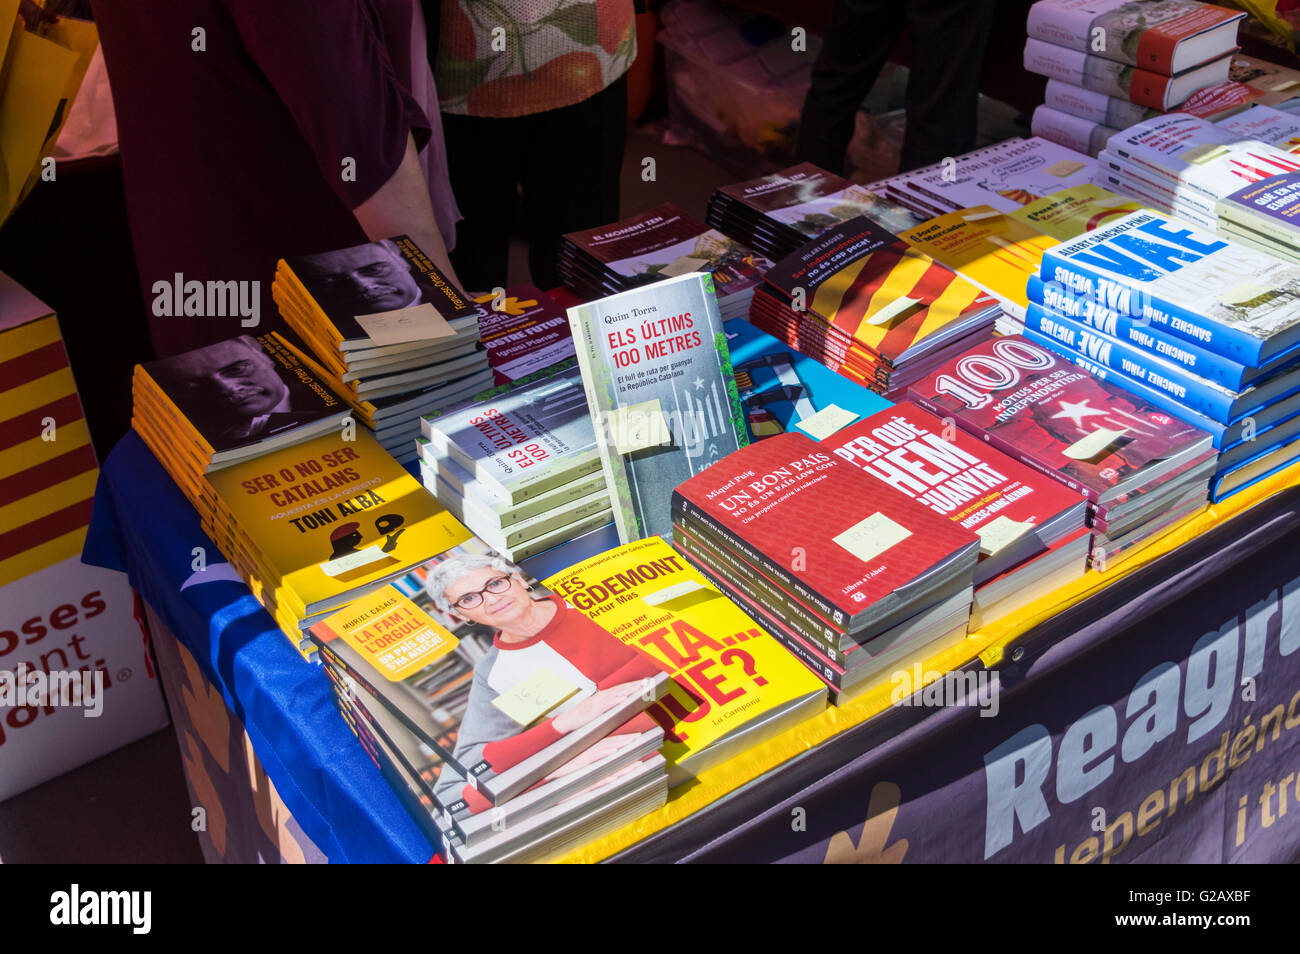 Bücher über katalanischen Nationalismus und Unabhängigkeit Kataloniens auf dem Display auf einen im Freien stand in Barcelona, Katalonien, Spanien. Stockfoto